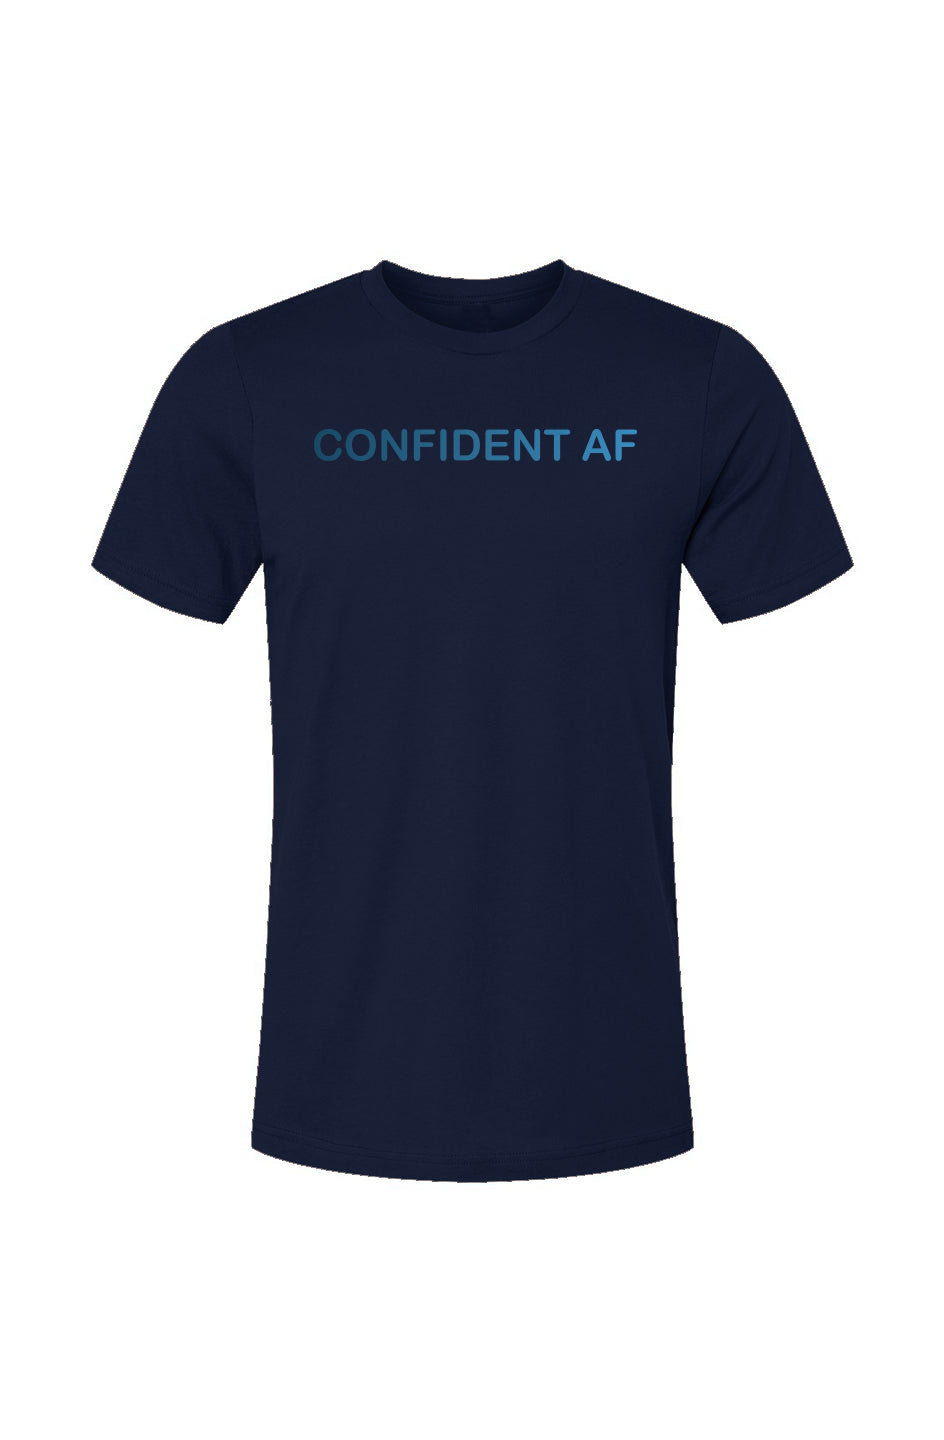 Confident AF - Monochrome Blue Gradient